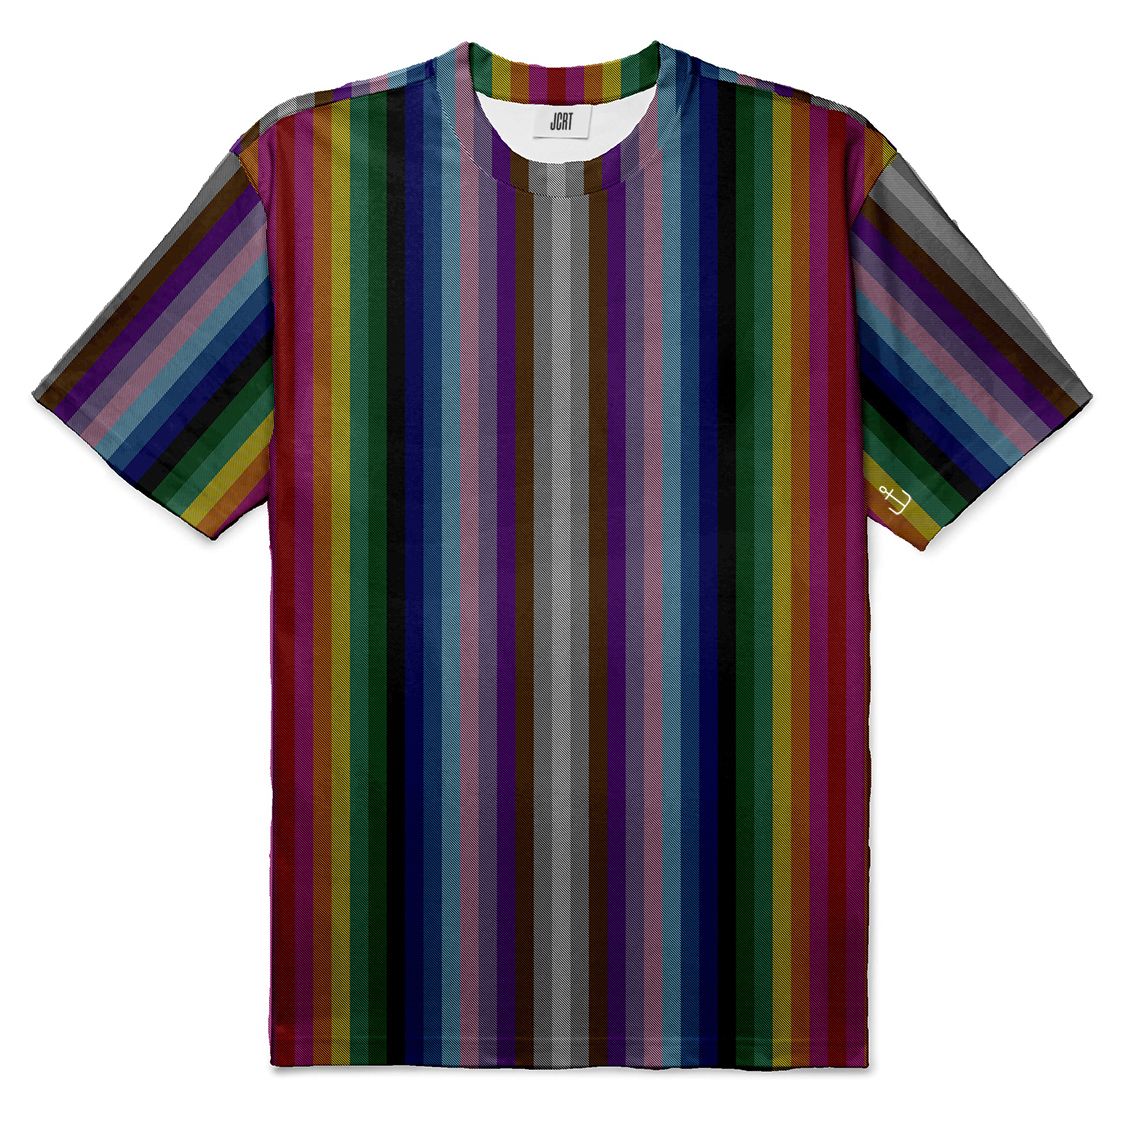 The 2020 Pride Plaid Stripe T-Shirt